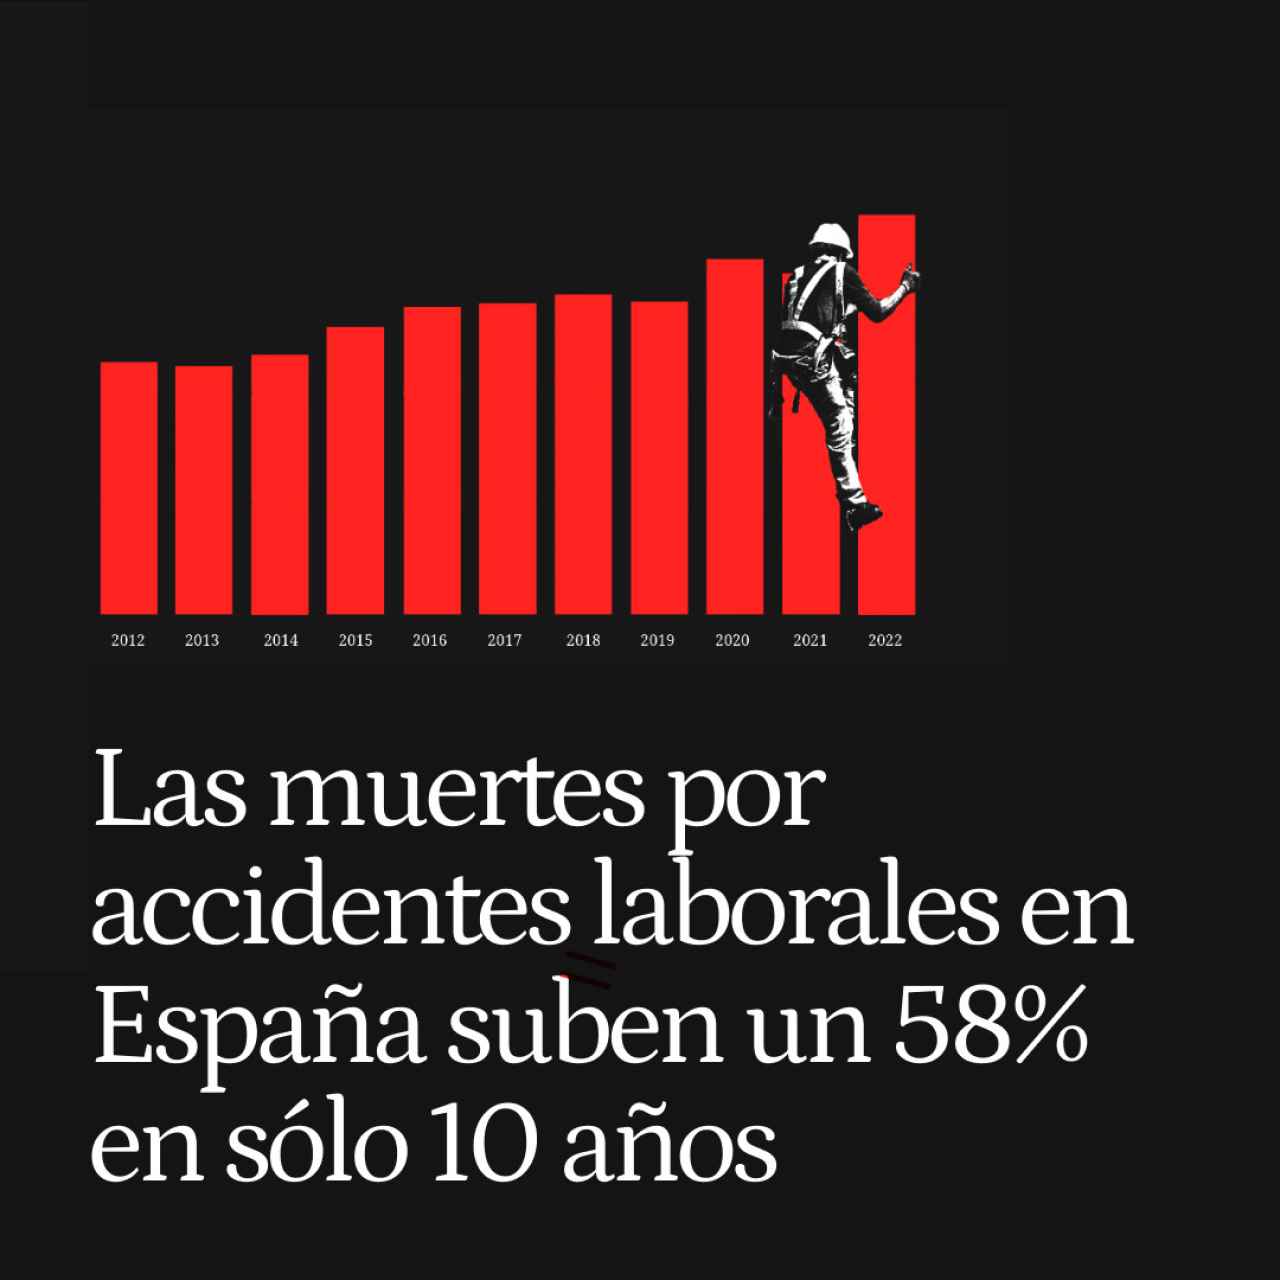 La batalla perdida contra los accidentes laborales en España: las muertes suben un 58% en sólo 10 años